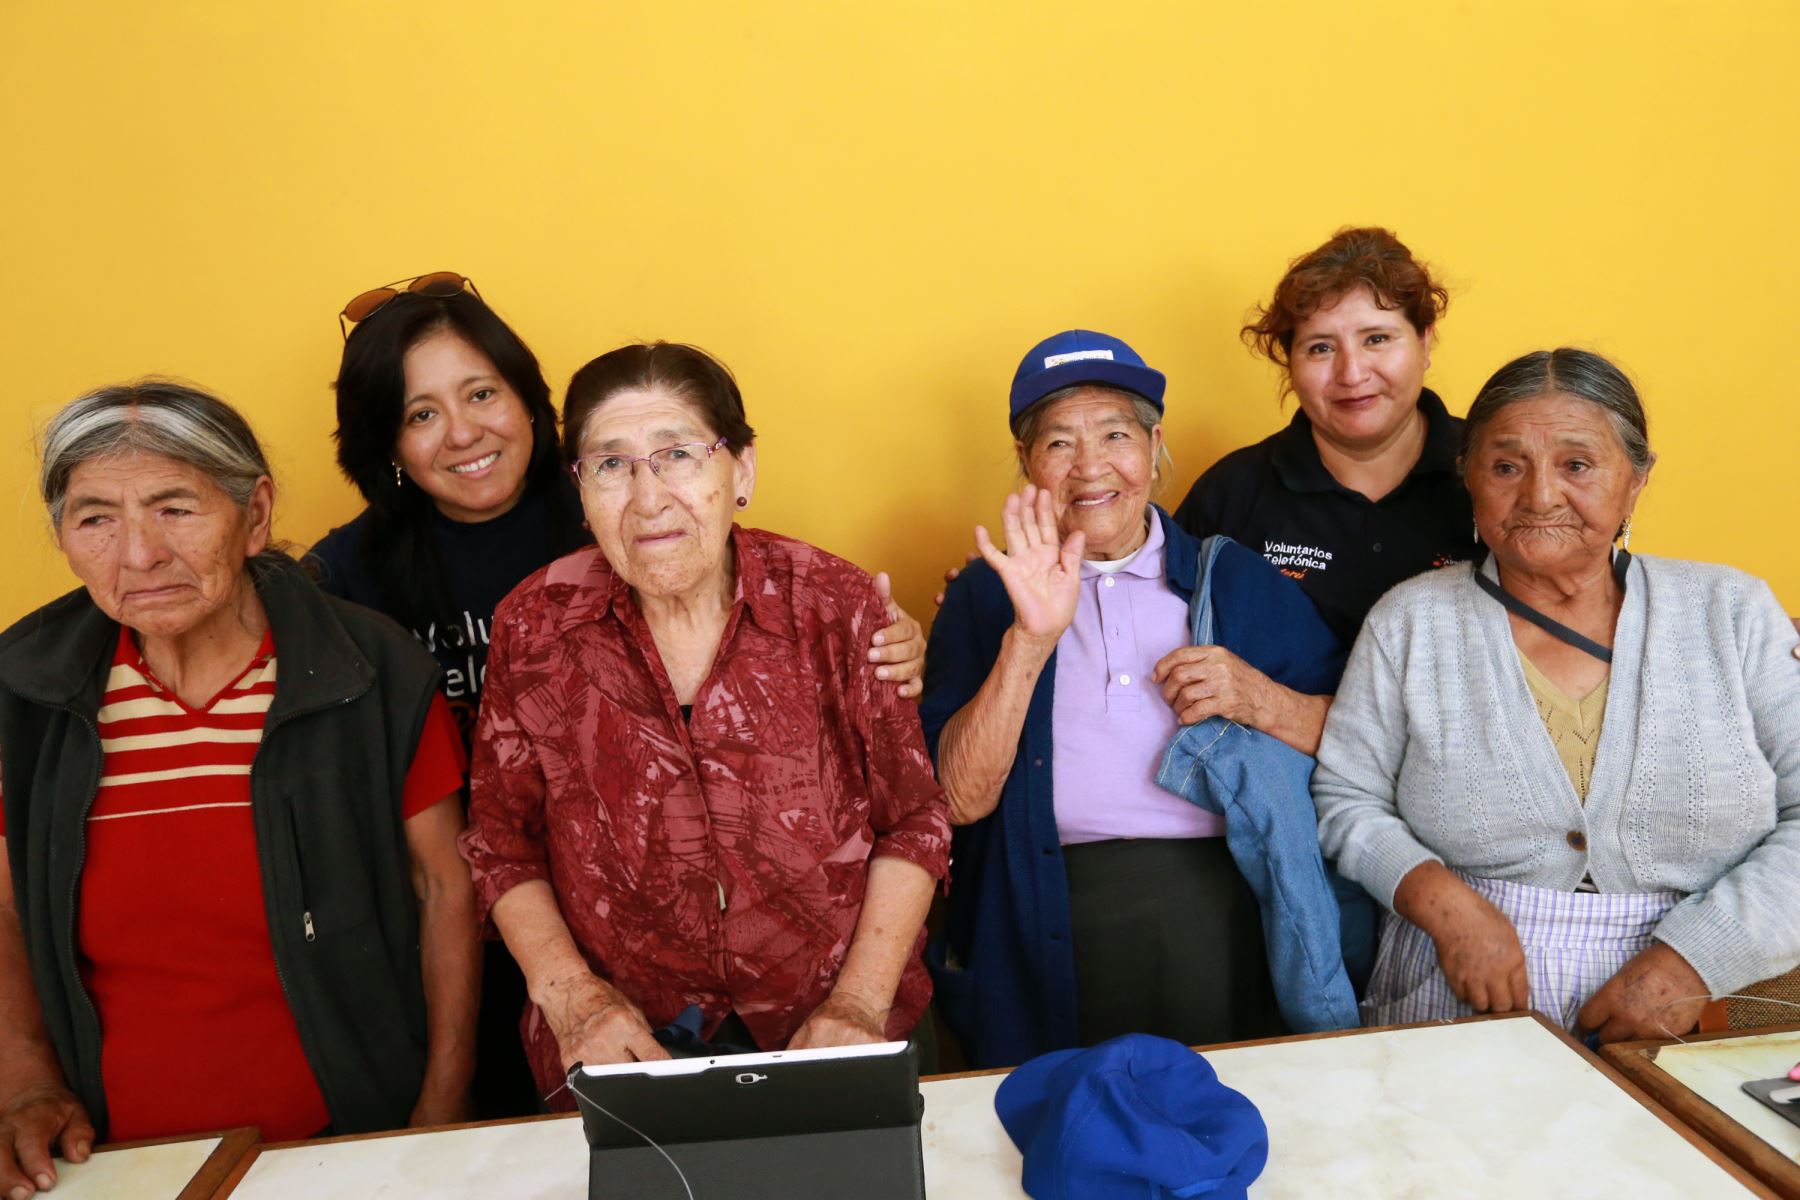 Abuelos quechua-hablantes del distrito de El Agustino aprenden a leer, escribir en español mediante el uso de tablets facilitadas por voluntaria de Telefónica del Perú. Foto: ANDINA/ Norman Córdova